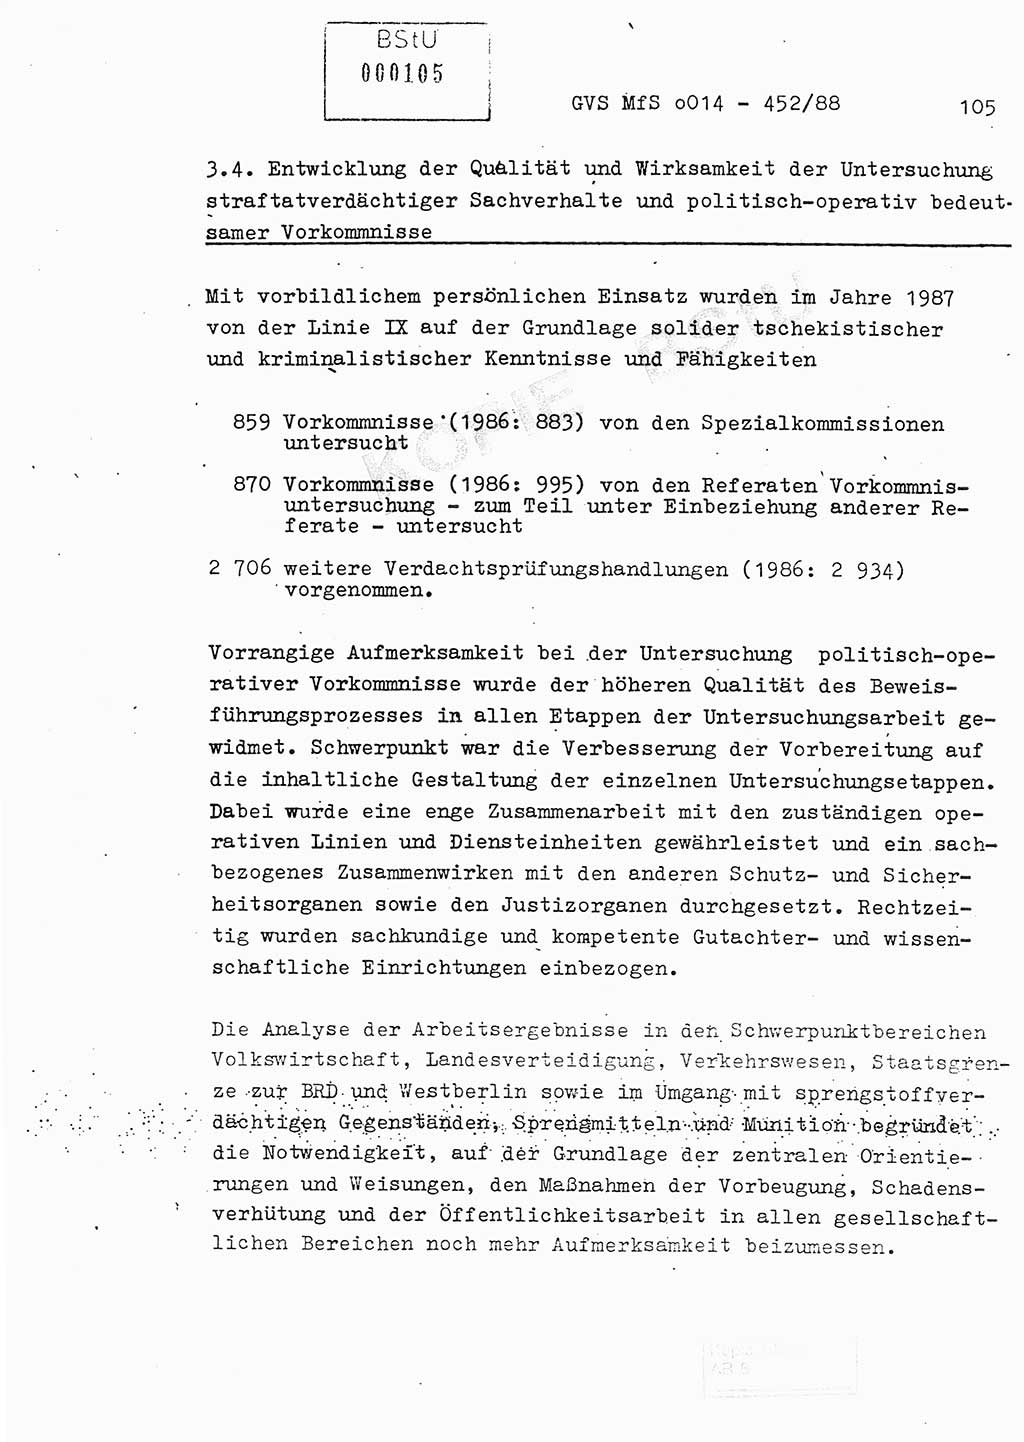 Jahresbericht der Hauptabteilung (HA) Ⅸ 1987, Einschätzung der Wirksamkeit der Untersuchungsarbeit im Jahre 1987, Ministerium für Staatssicherheit (MfS) der Deutschen Demokratischen Republik (DDR), Hauptabteilung Ⅸ, Geheime Verschlußsache (GVS) o014-452/88, Berlin 1988, Seite 105 (Einsch. MfS DDR HA Ⅸ GVS o014-452/88 1987, S. 105)